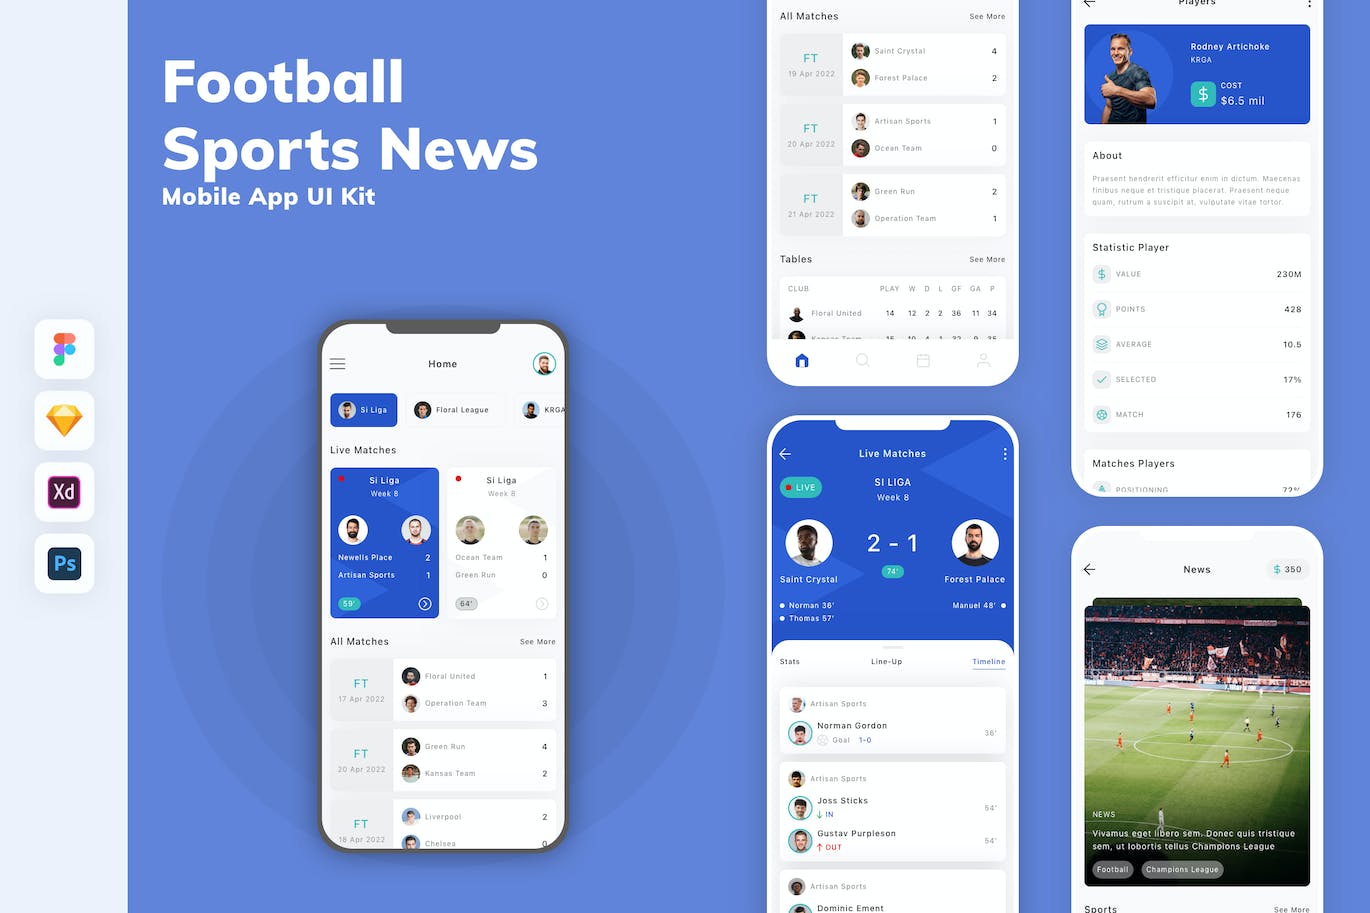 足球&体育新闻App移动应用设计UI工具包 Football & Sports News Mobile App UI Kit APP UI 第1张